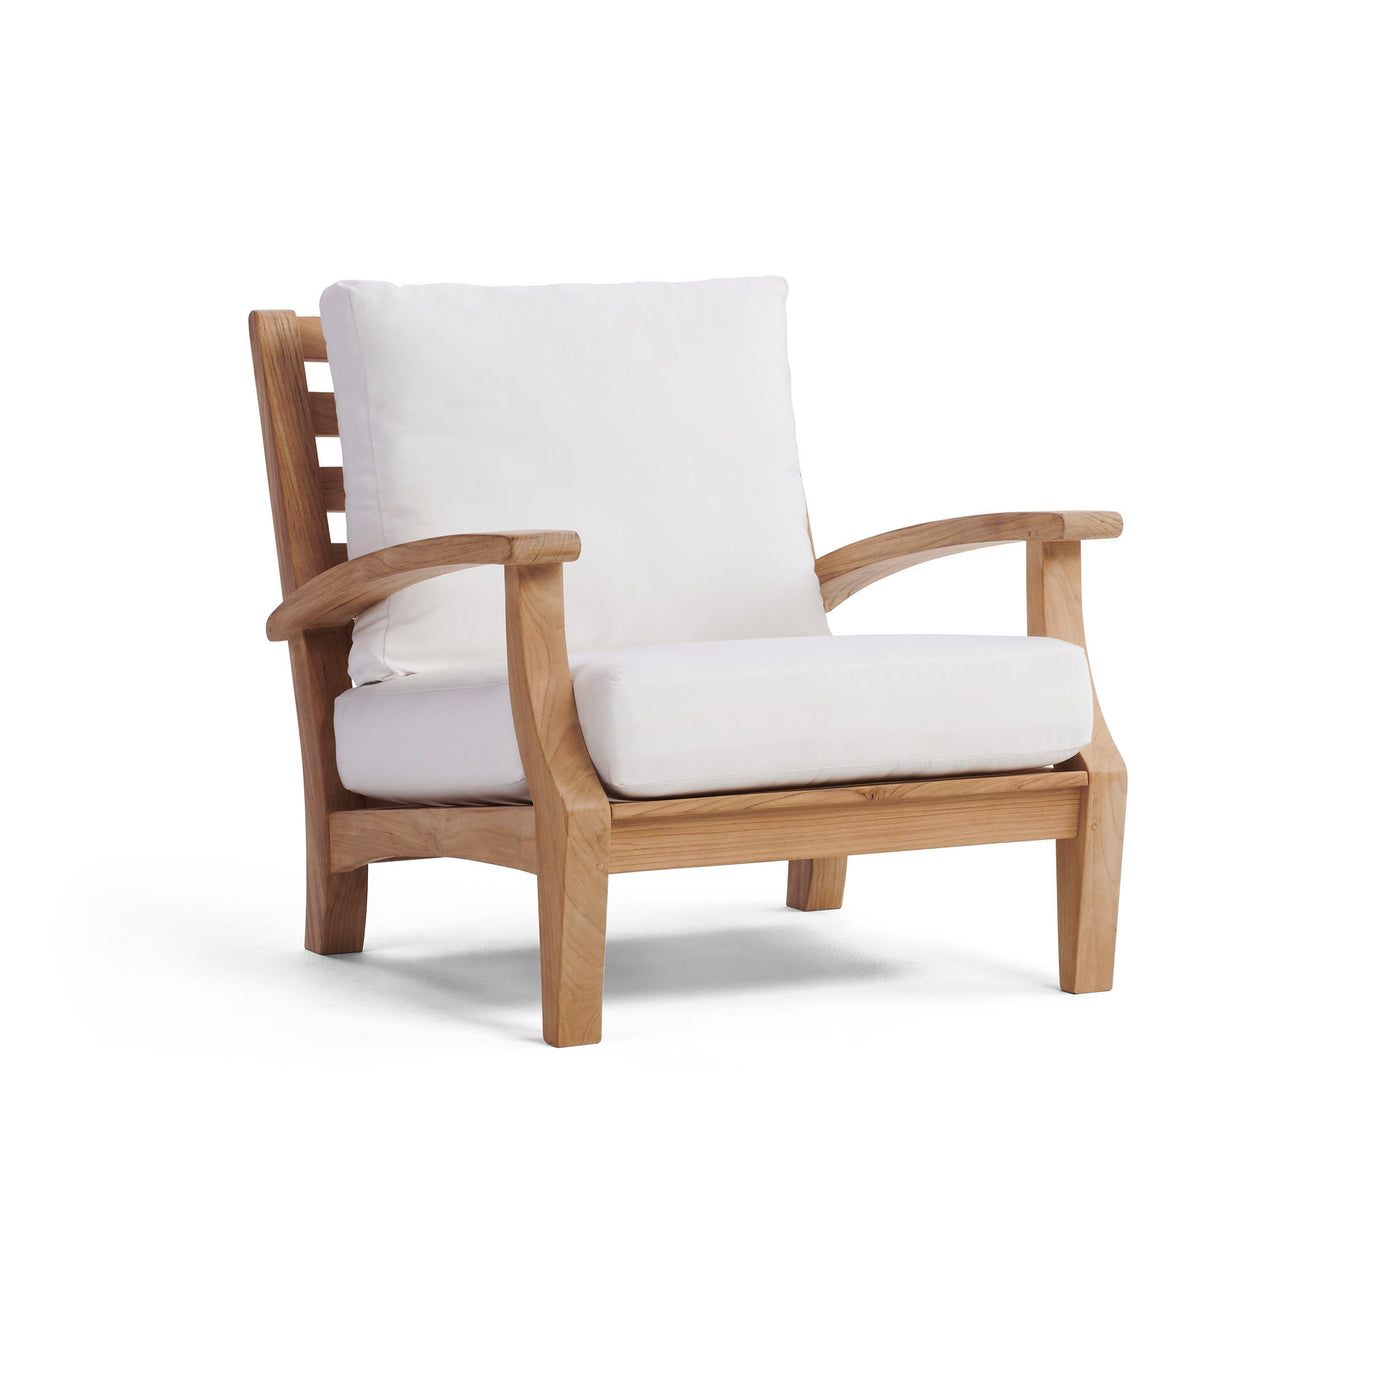  Yardbird Winnie Arm Chair Outdoor Furniture